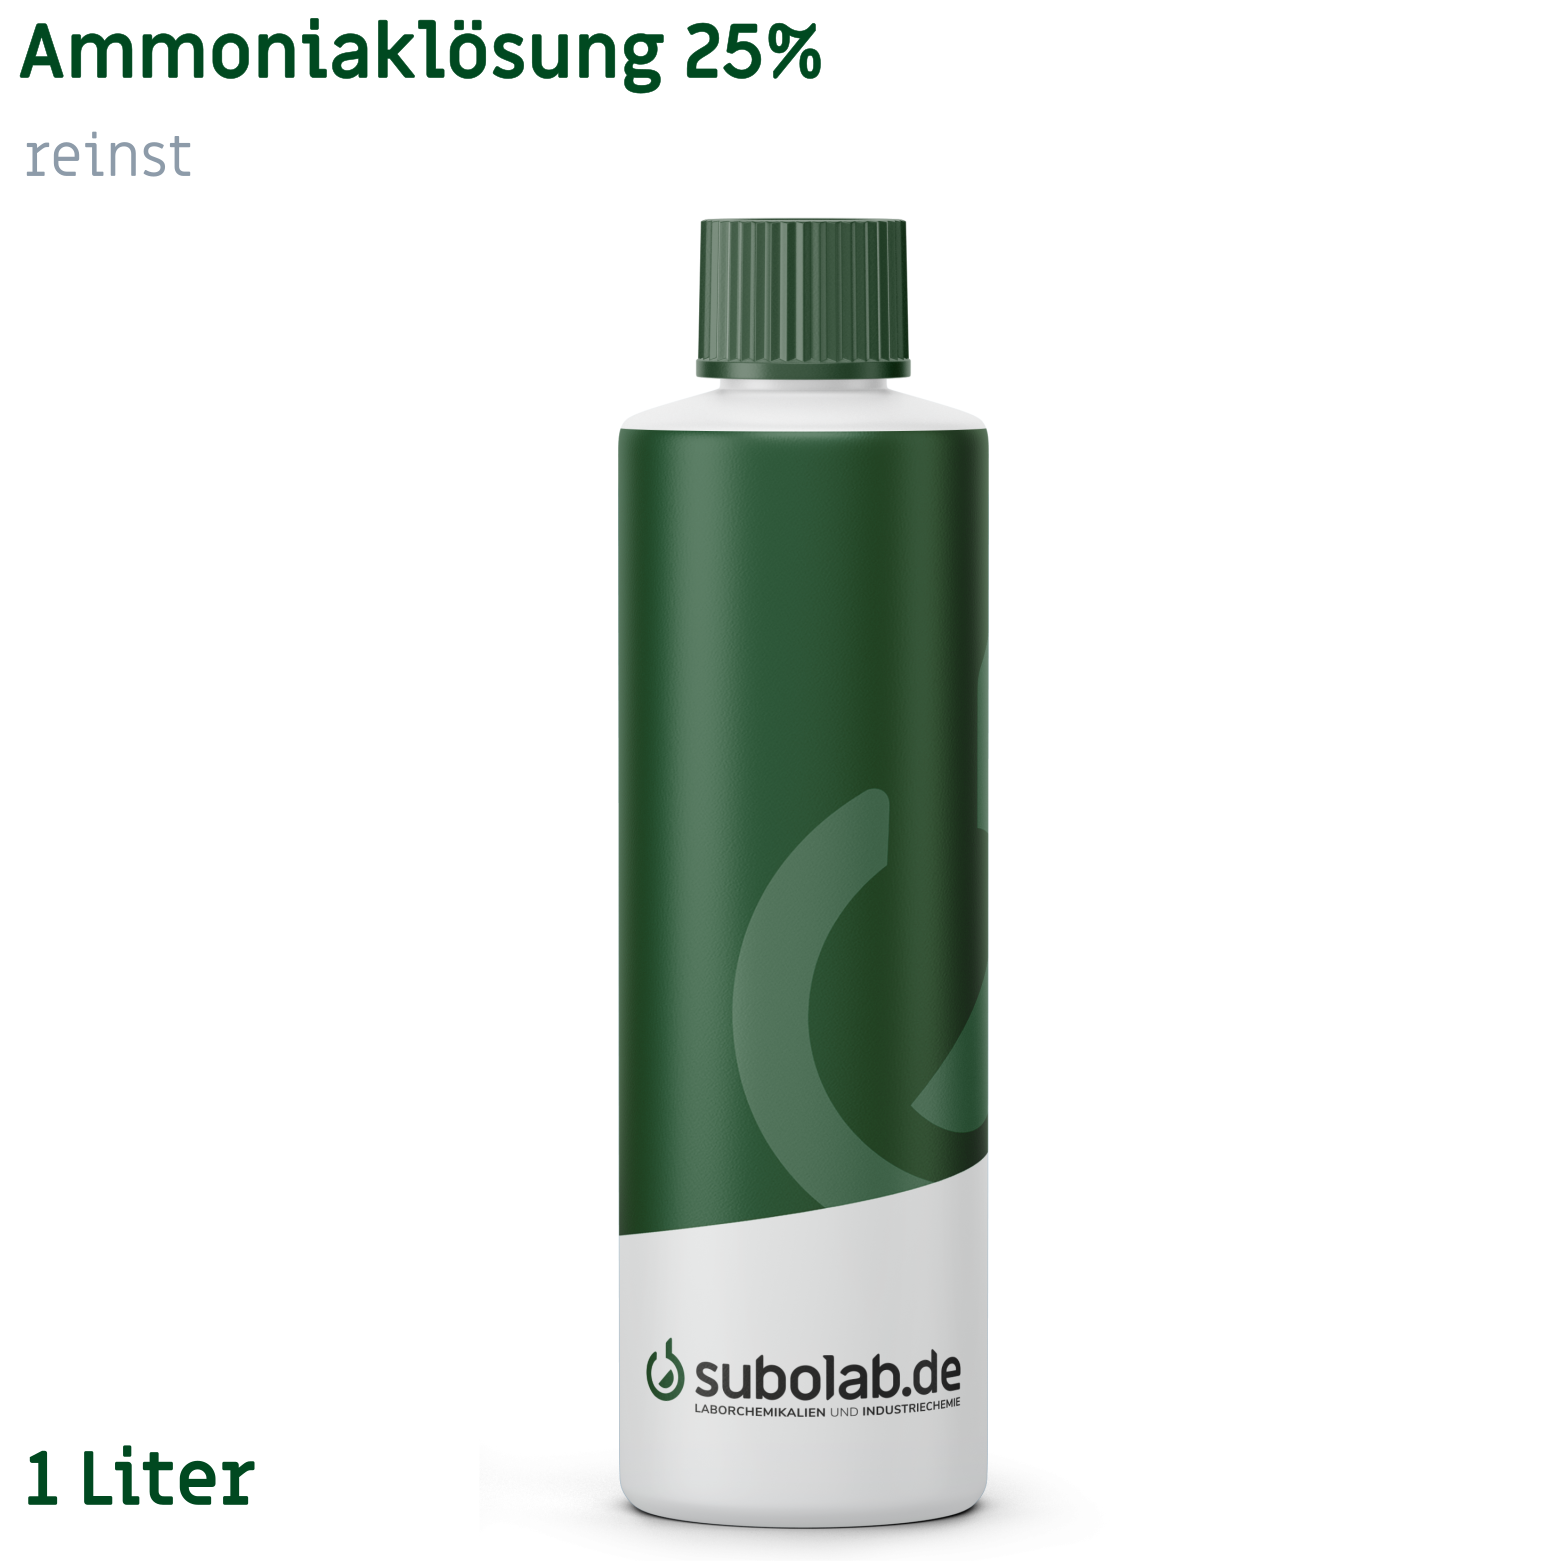 Bild von Ammoniaklösung 25% reinst (1 Liter)